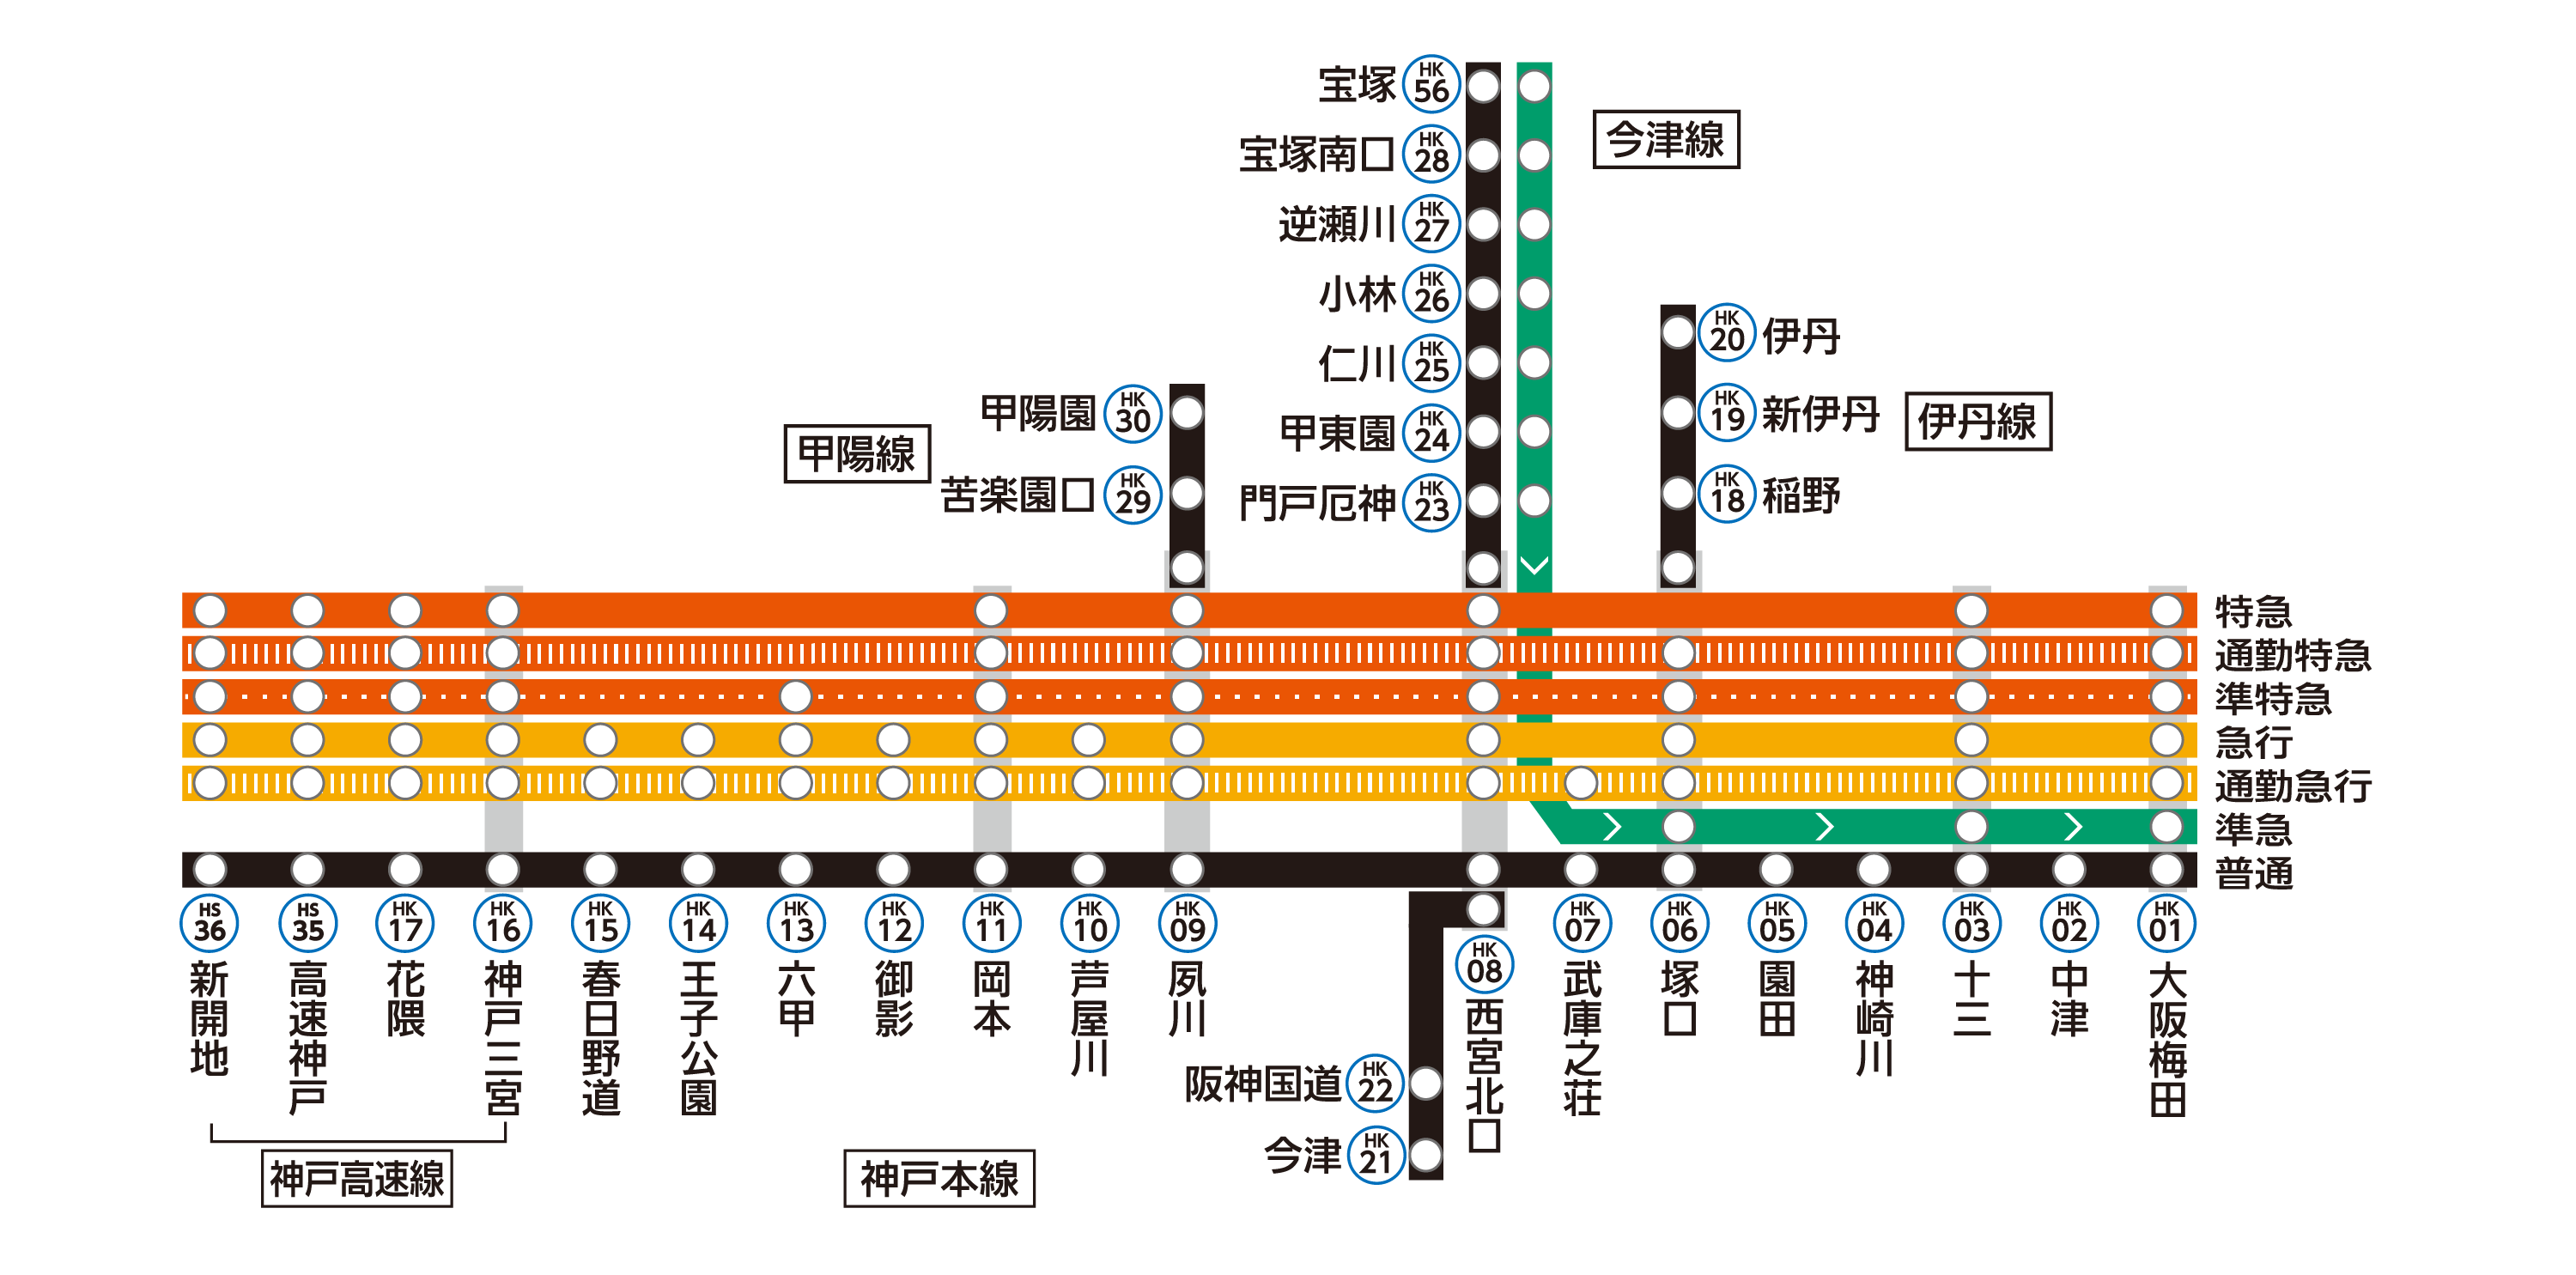 神戸線は神戸本線・伊丹線・会津線・甲陽線・神戸高速線から構成されています。
  神戸各駅の列車発車時刻や停車駅は、ページ下部の「駅を探す」から、各駅の時刻表ページをご確認ください。